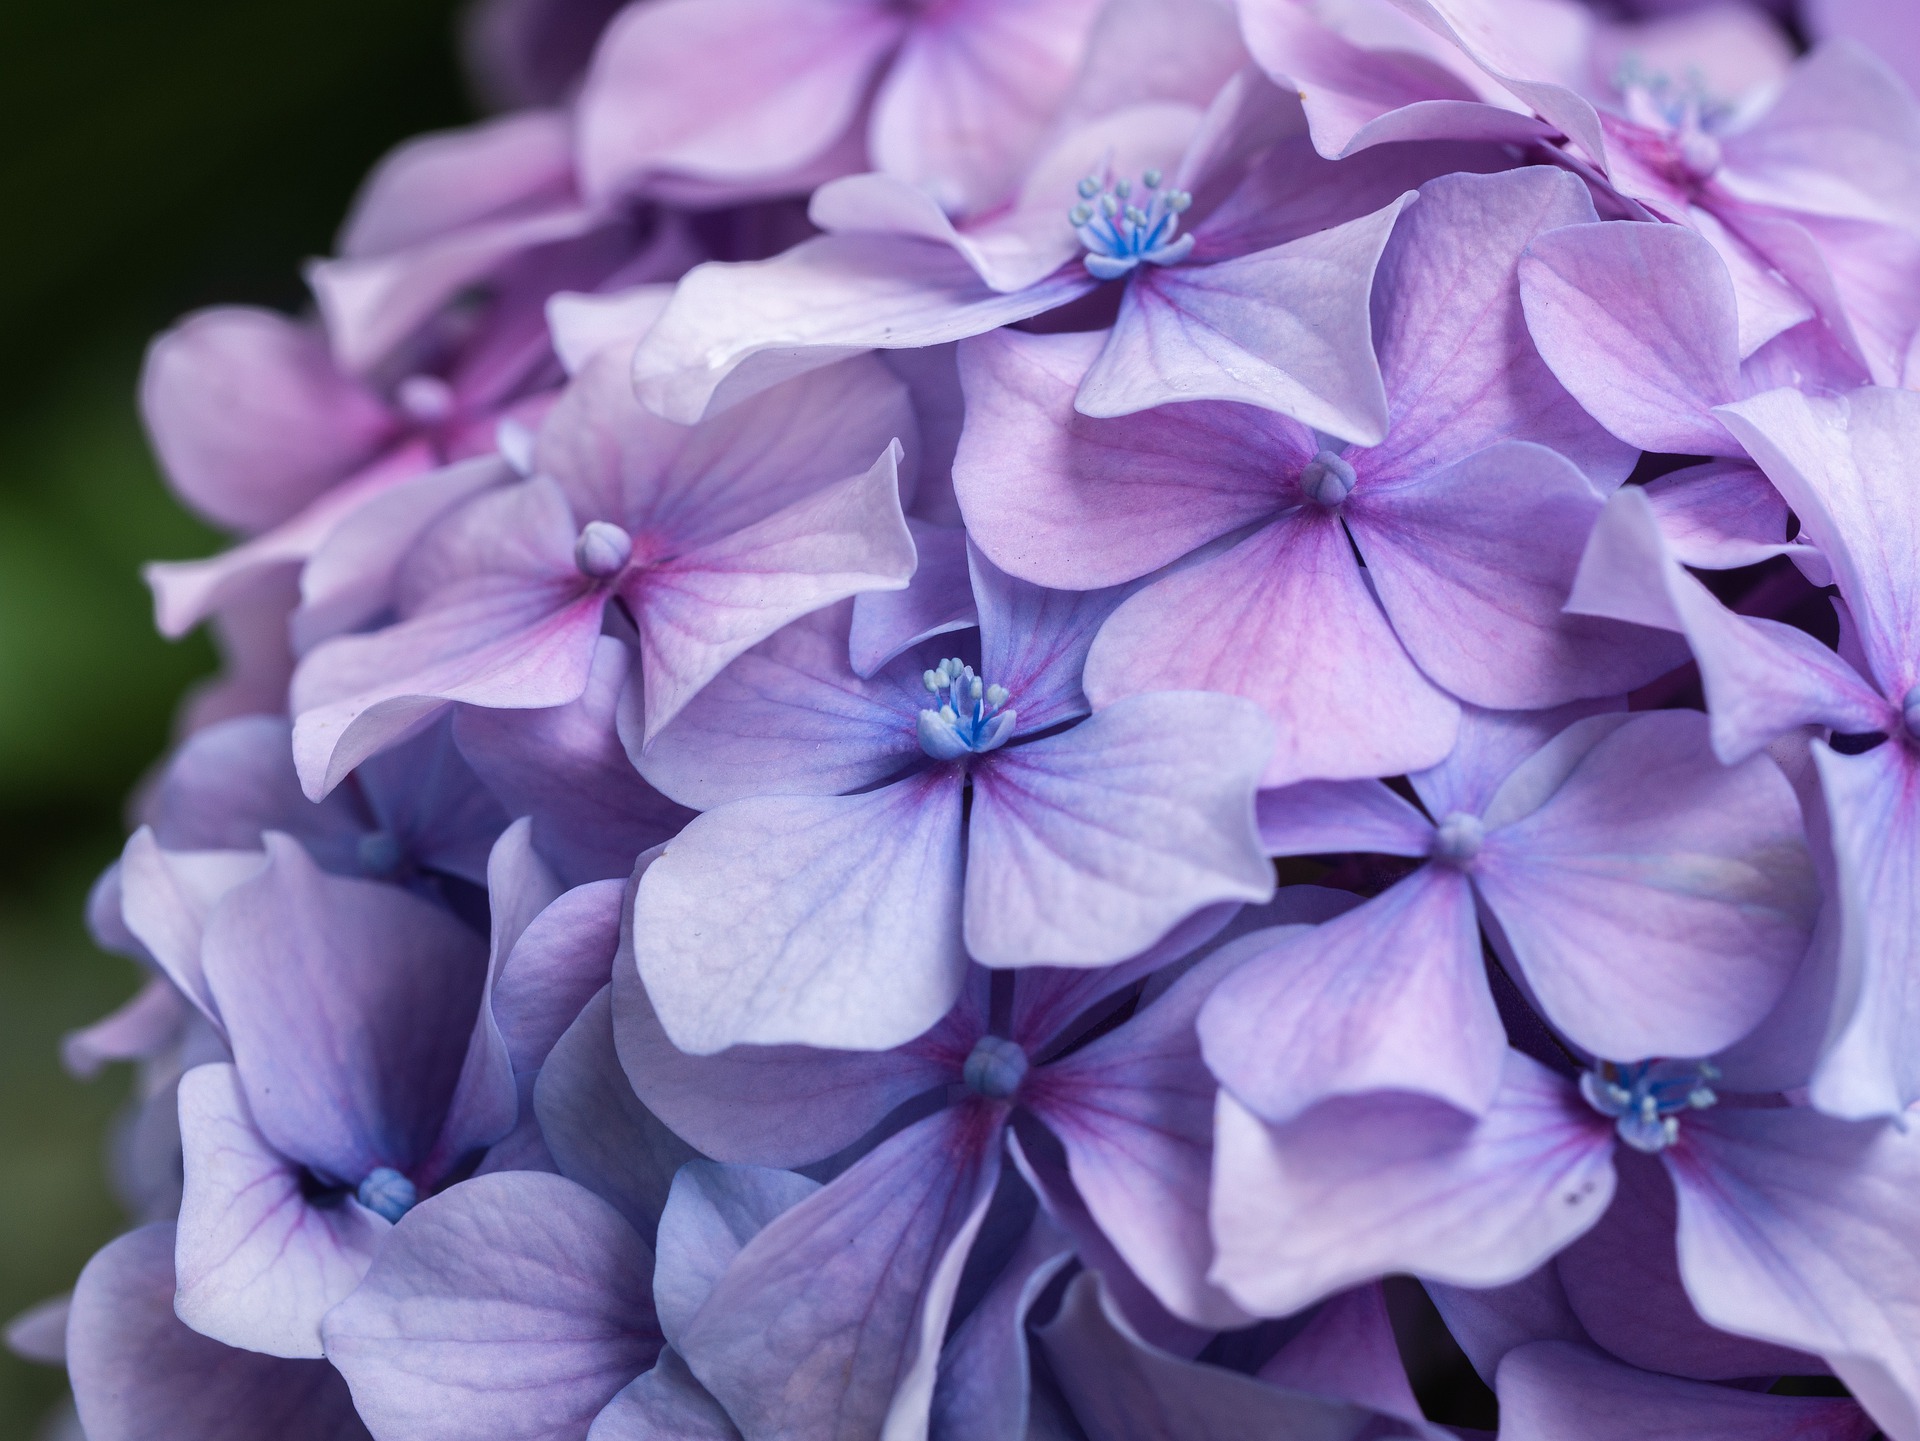 <img src="ana.jpg" alt="ana purple flowers for a beautiful angel"/> 